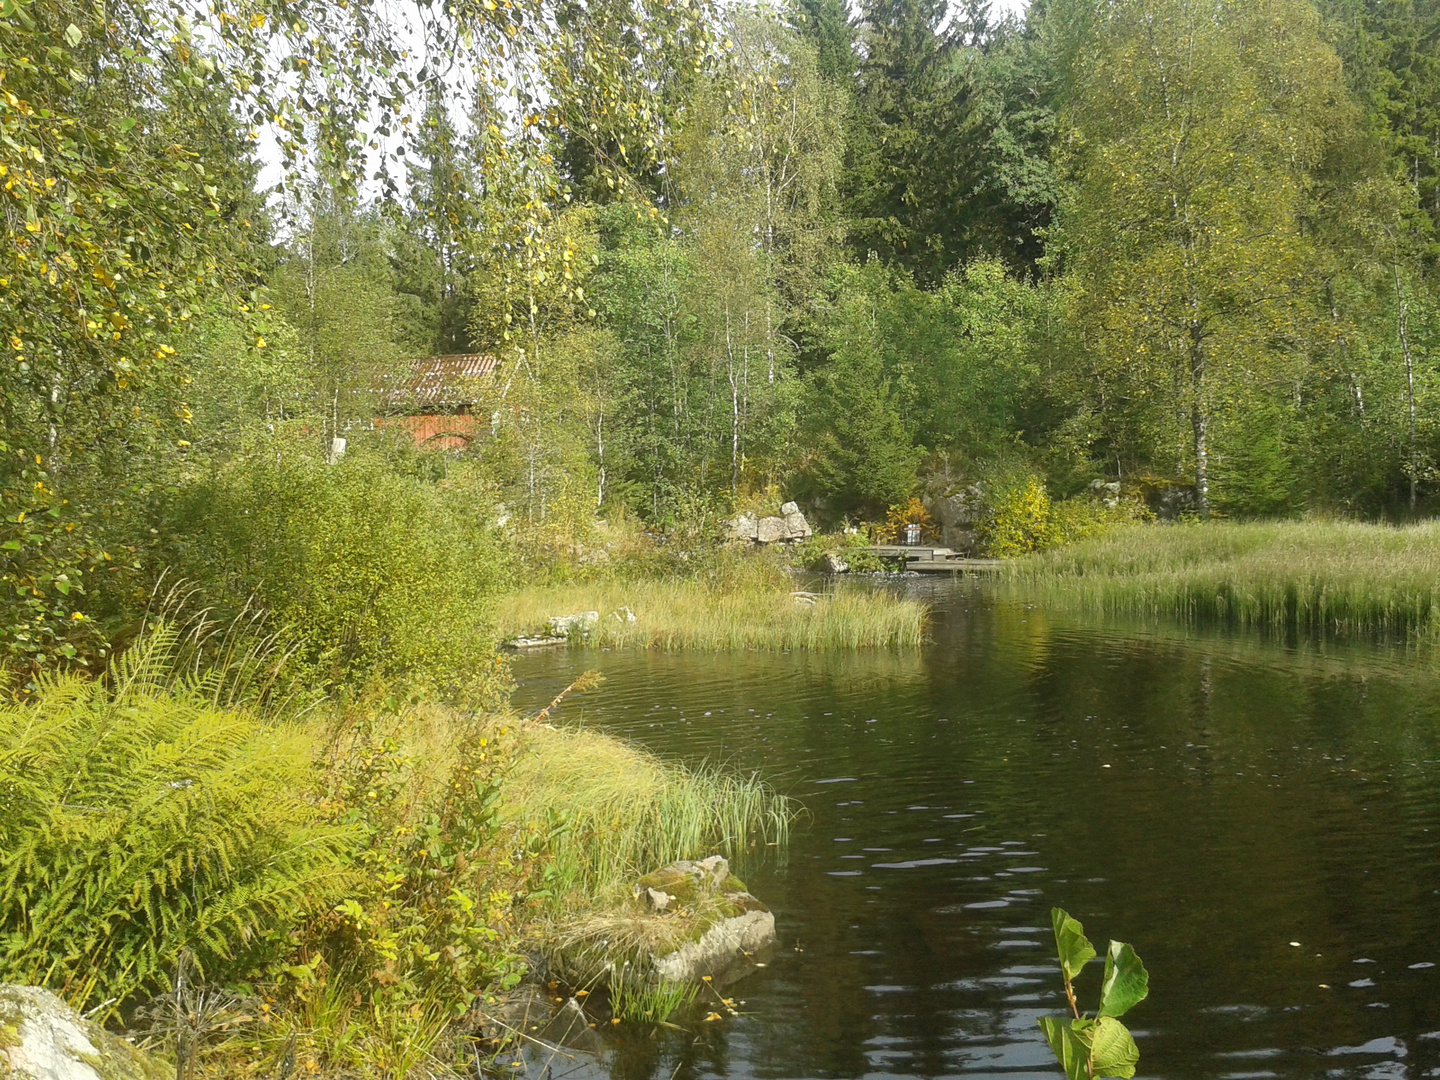 Kleiner See i. Wald bei Ulricehamn / Schweden